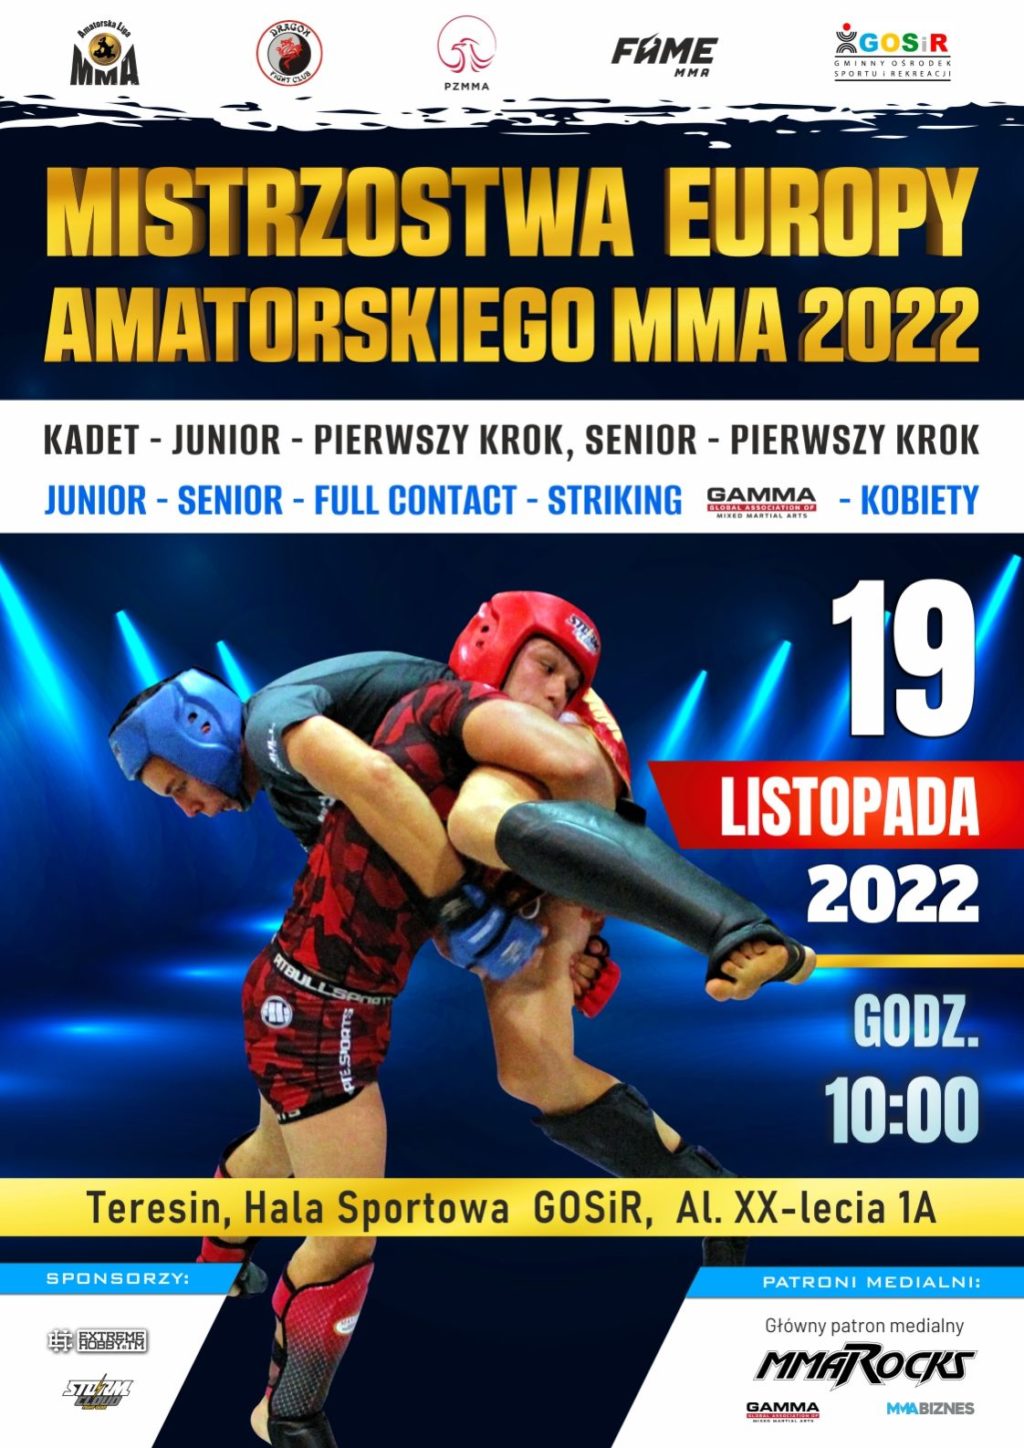 Mistrzostwa Europy Stick Fighting 2023 Stary Sącz – Informacja Turystyczna